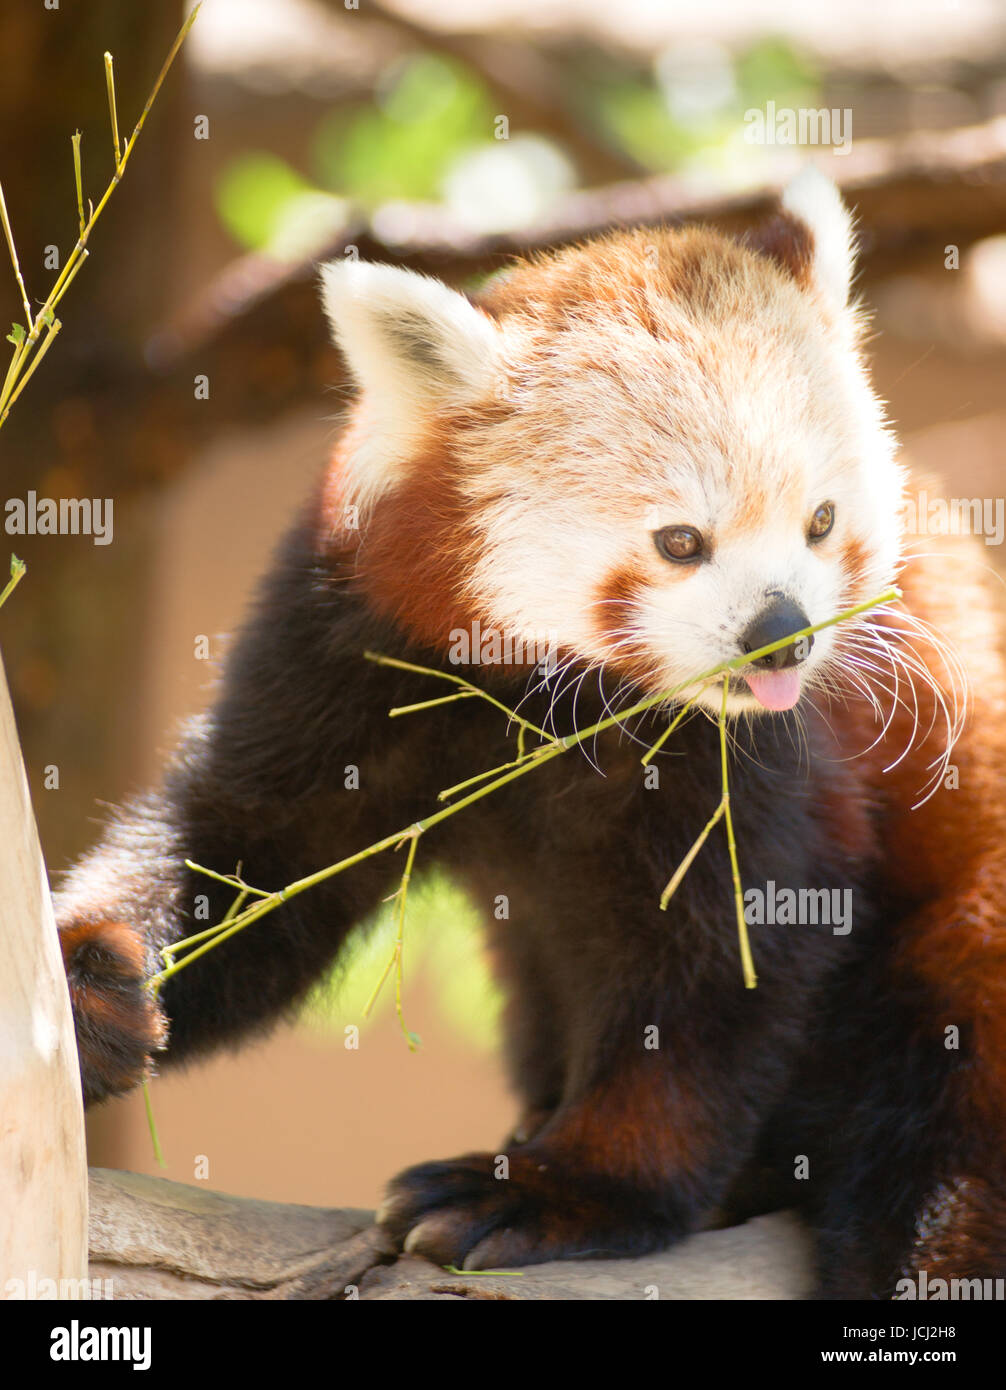 Un panda rouge en captivité est assis dans son arbre préféré manger les brindilles et les branches Banque D'Images